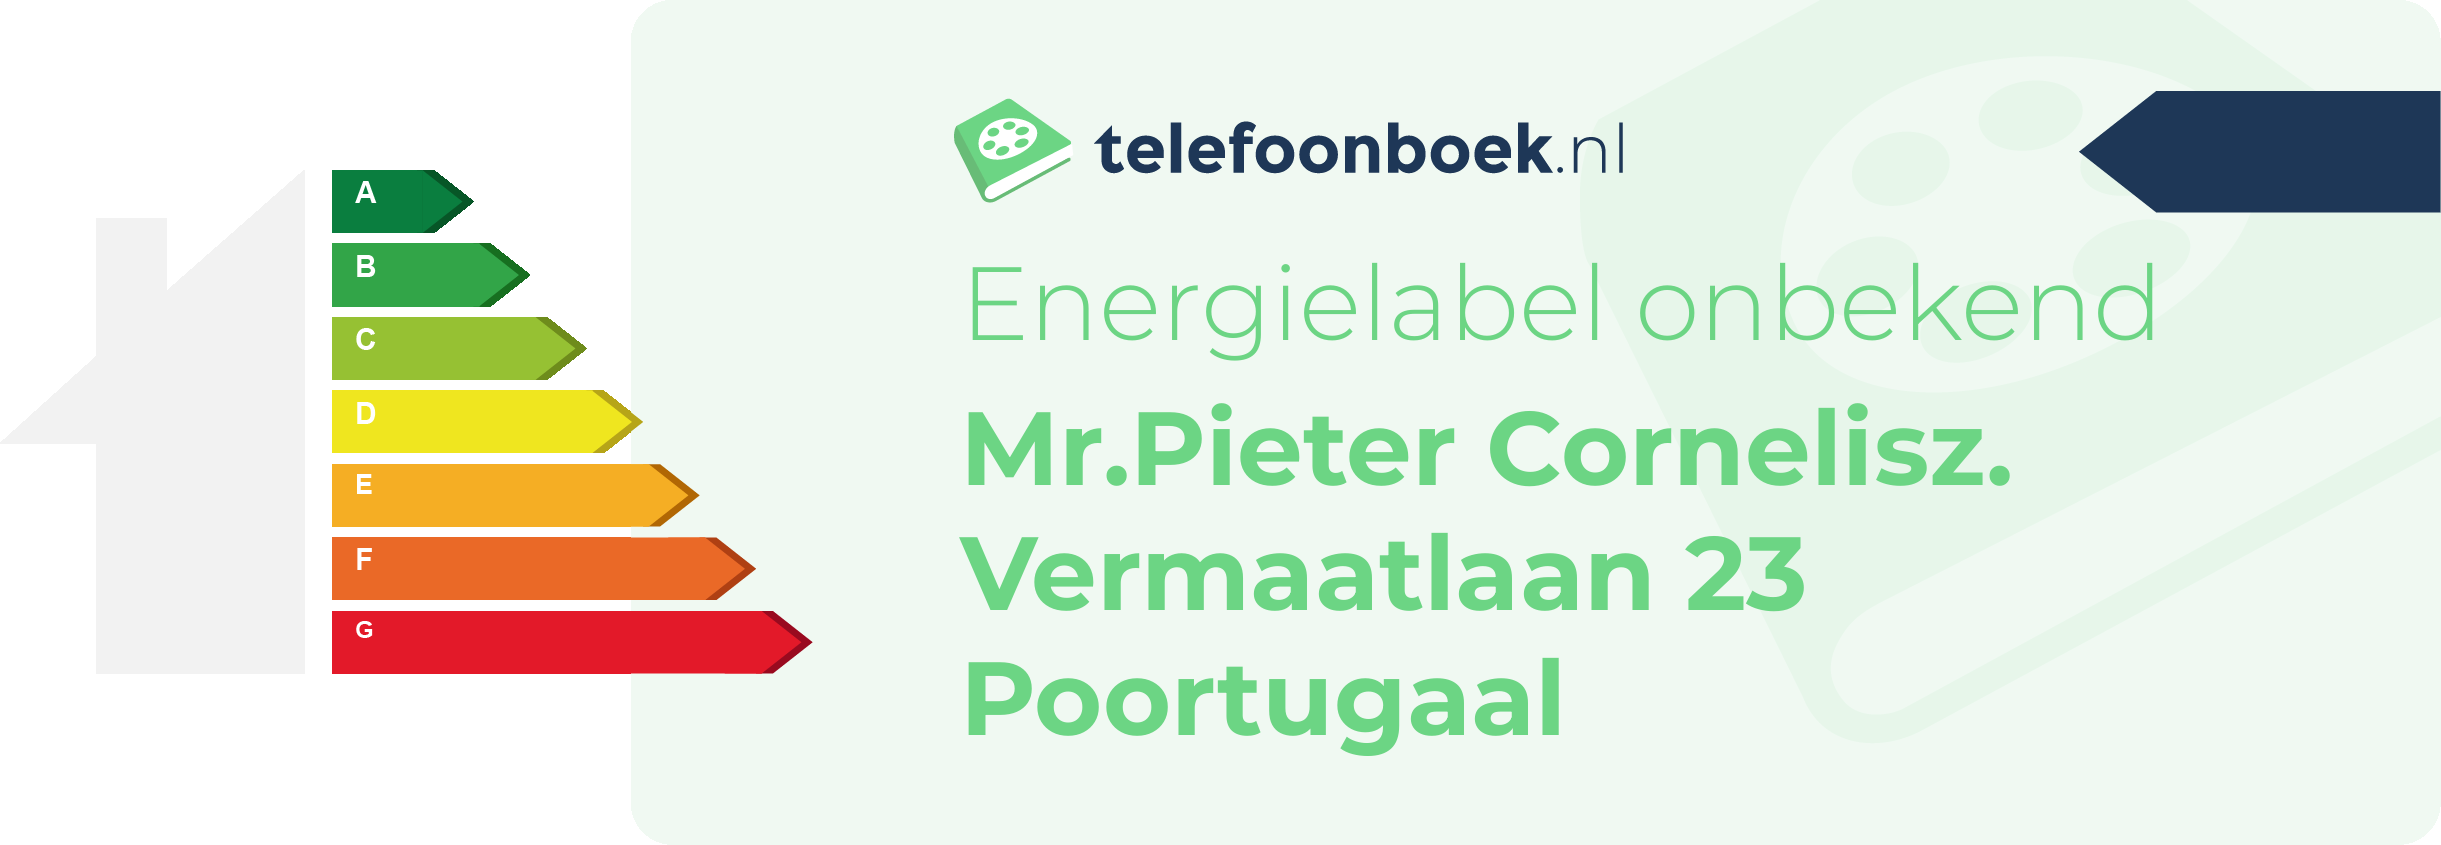 Energielabel Mr.Pieter Cornelisz. Vermaatlaan 23 Poortugaal